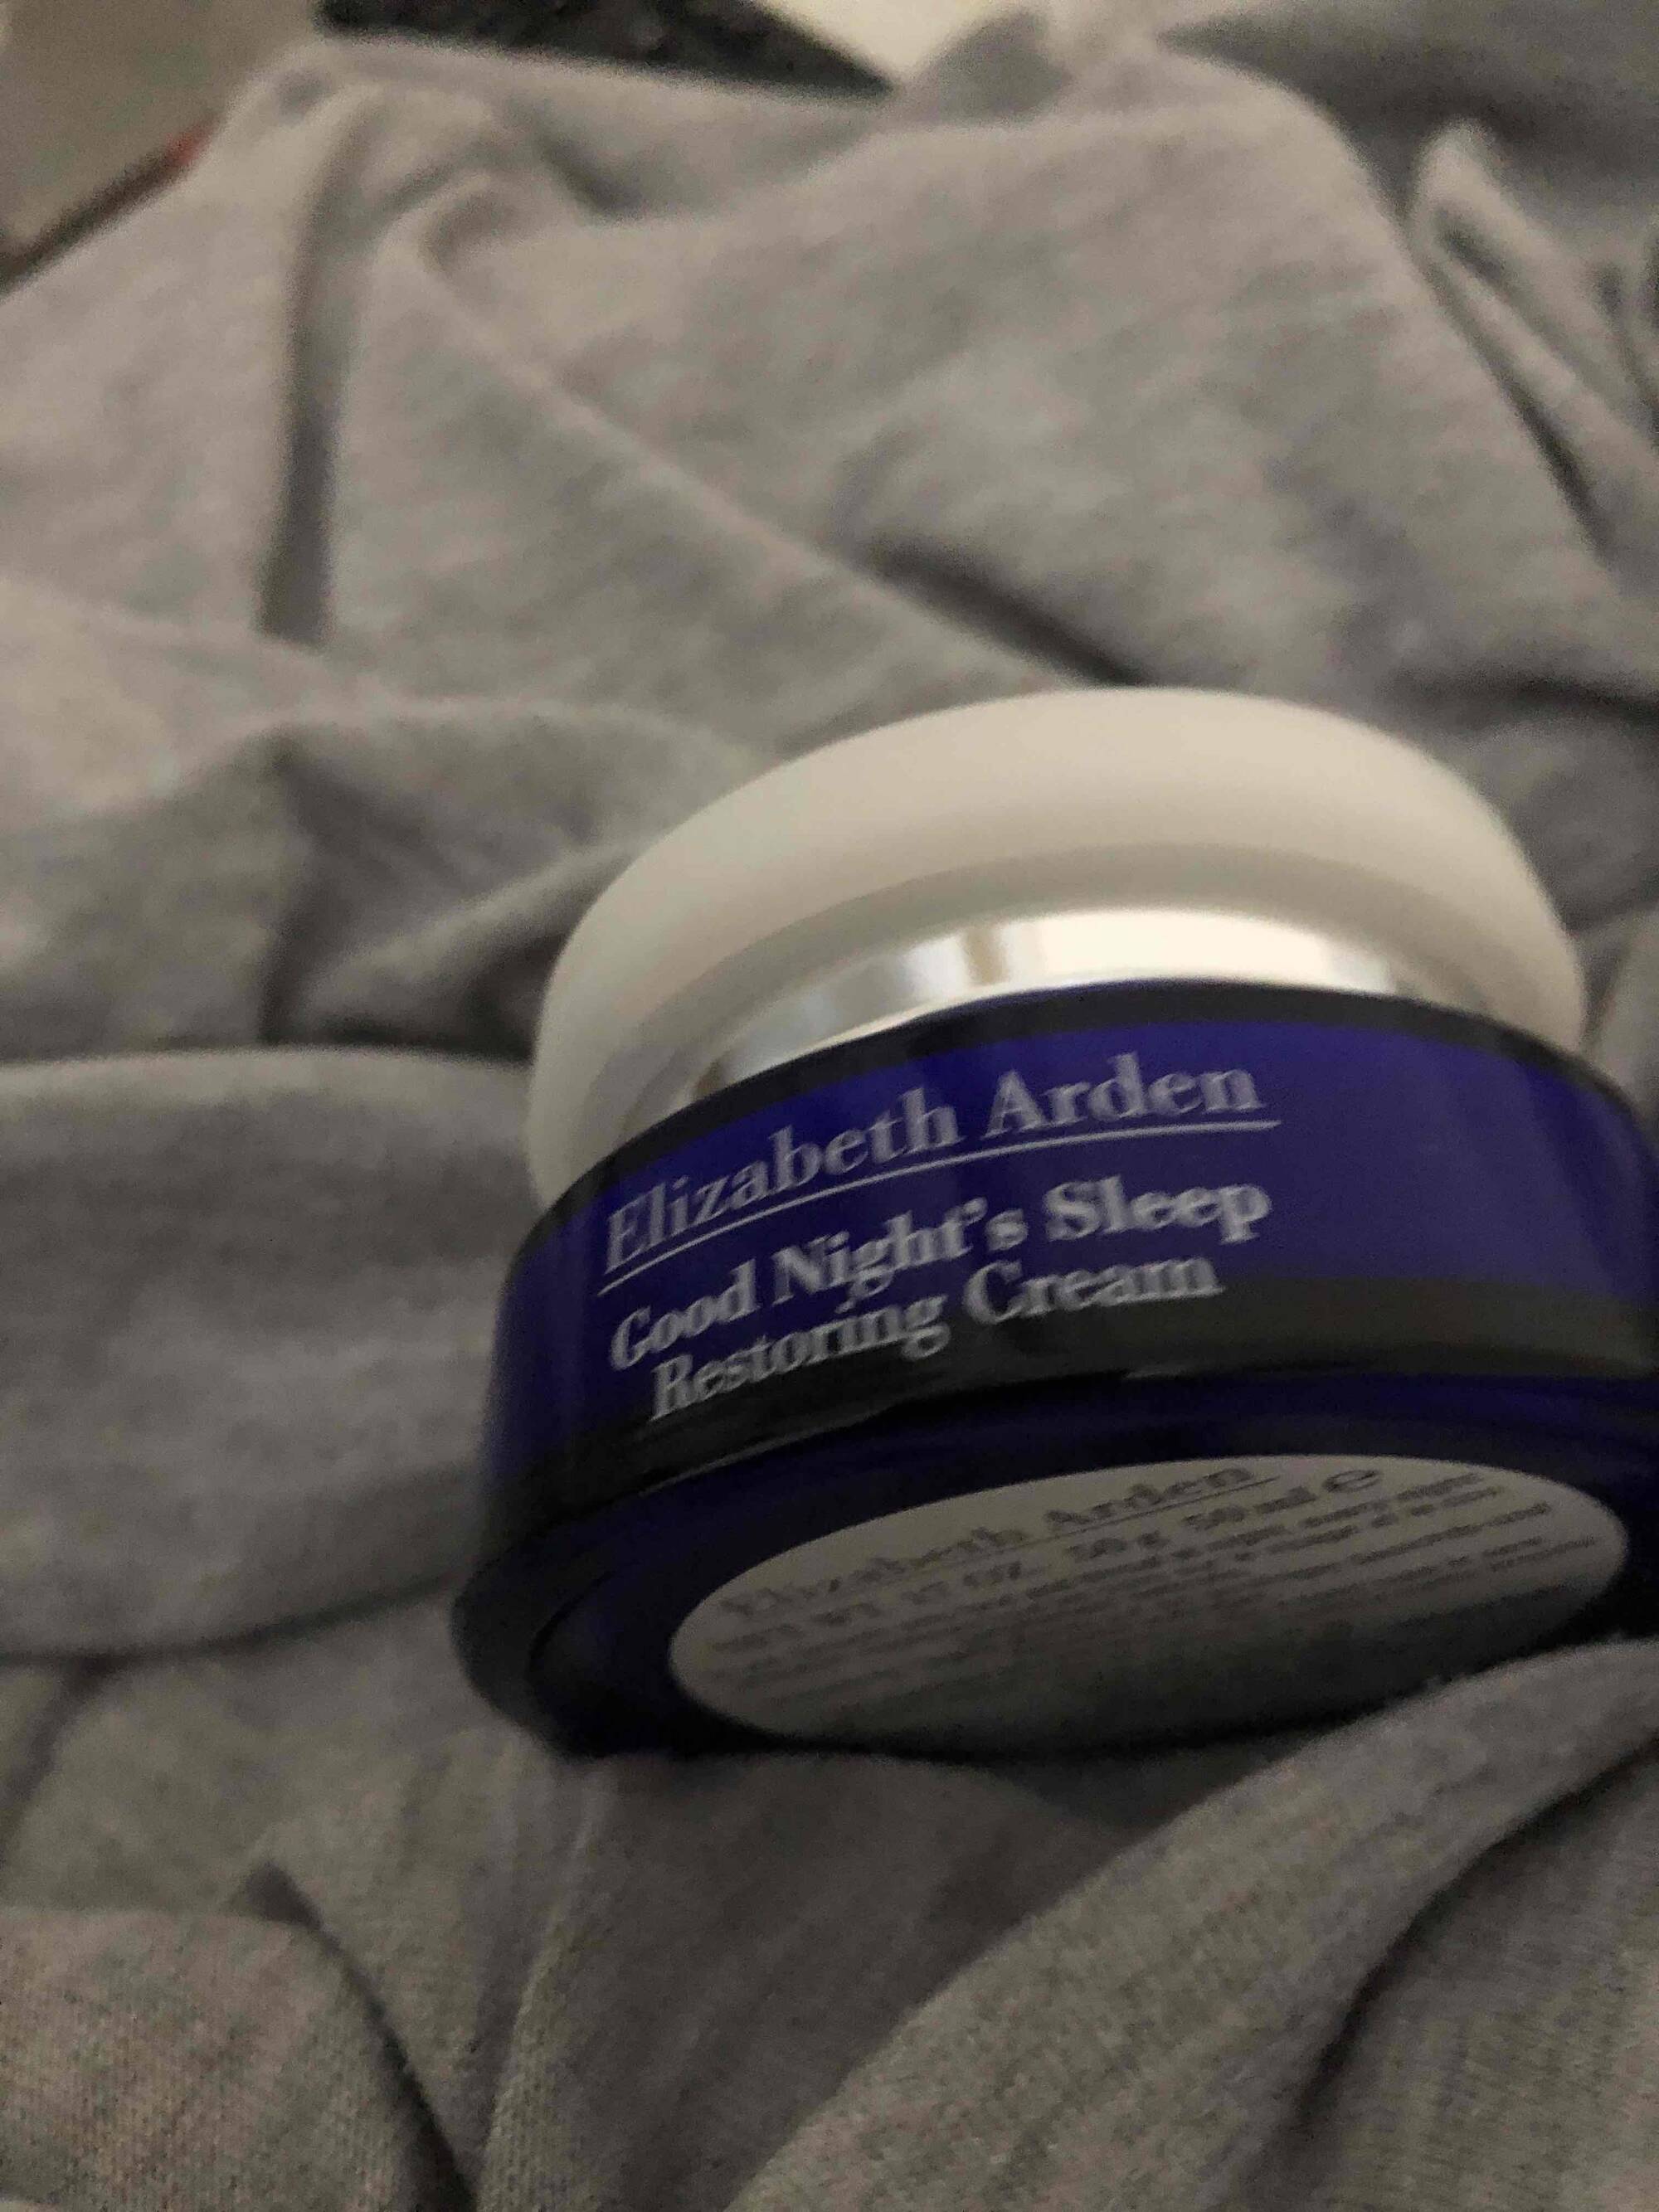 ELIZABETH ARDEN - Good night's sleep - Restoring cream